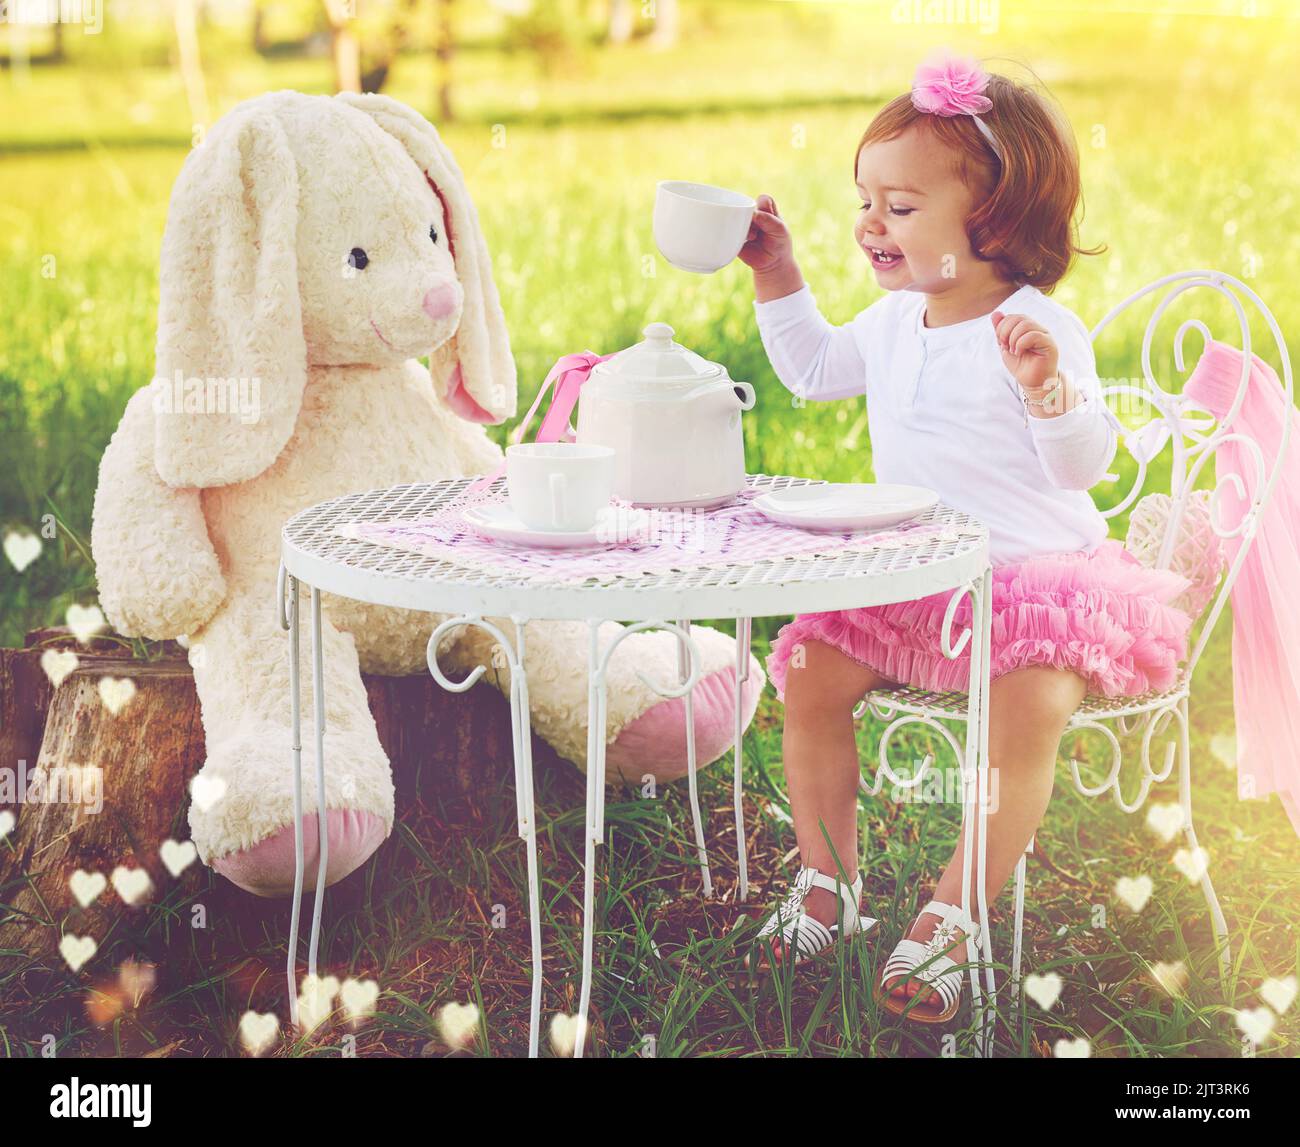 No hay límites a su imaginación. Una pequeña chica linda que tiene una fiesta de té con su animal de peluche en el césped afuera. Foto de stock